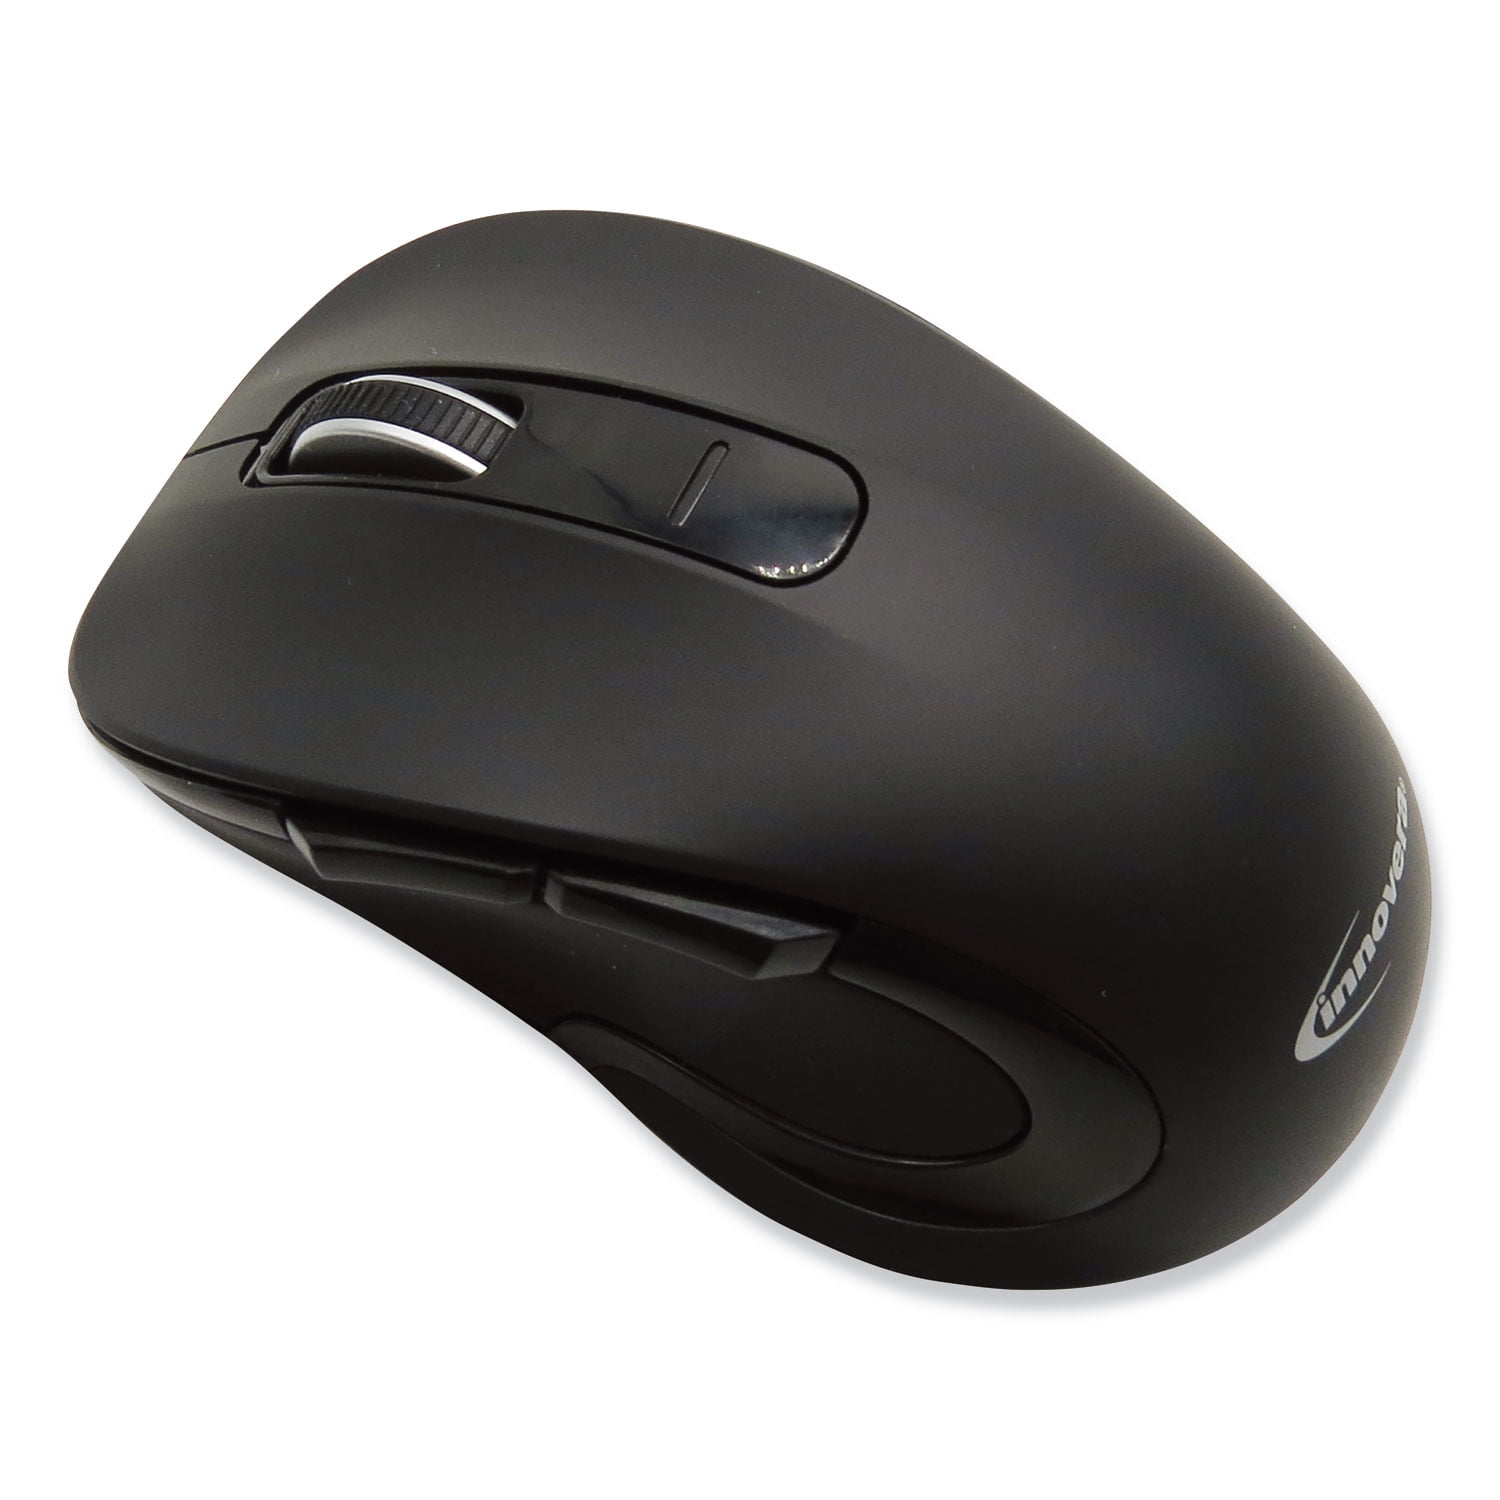 Беспроводная мышь pro wireless. Мышка Wireless Optical Mouse. 2.4GHZ Wireless Optical Mouse. Мышка Intro 2.4GHZ Wireless. Optical Mouse 3600 вз.